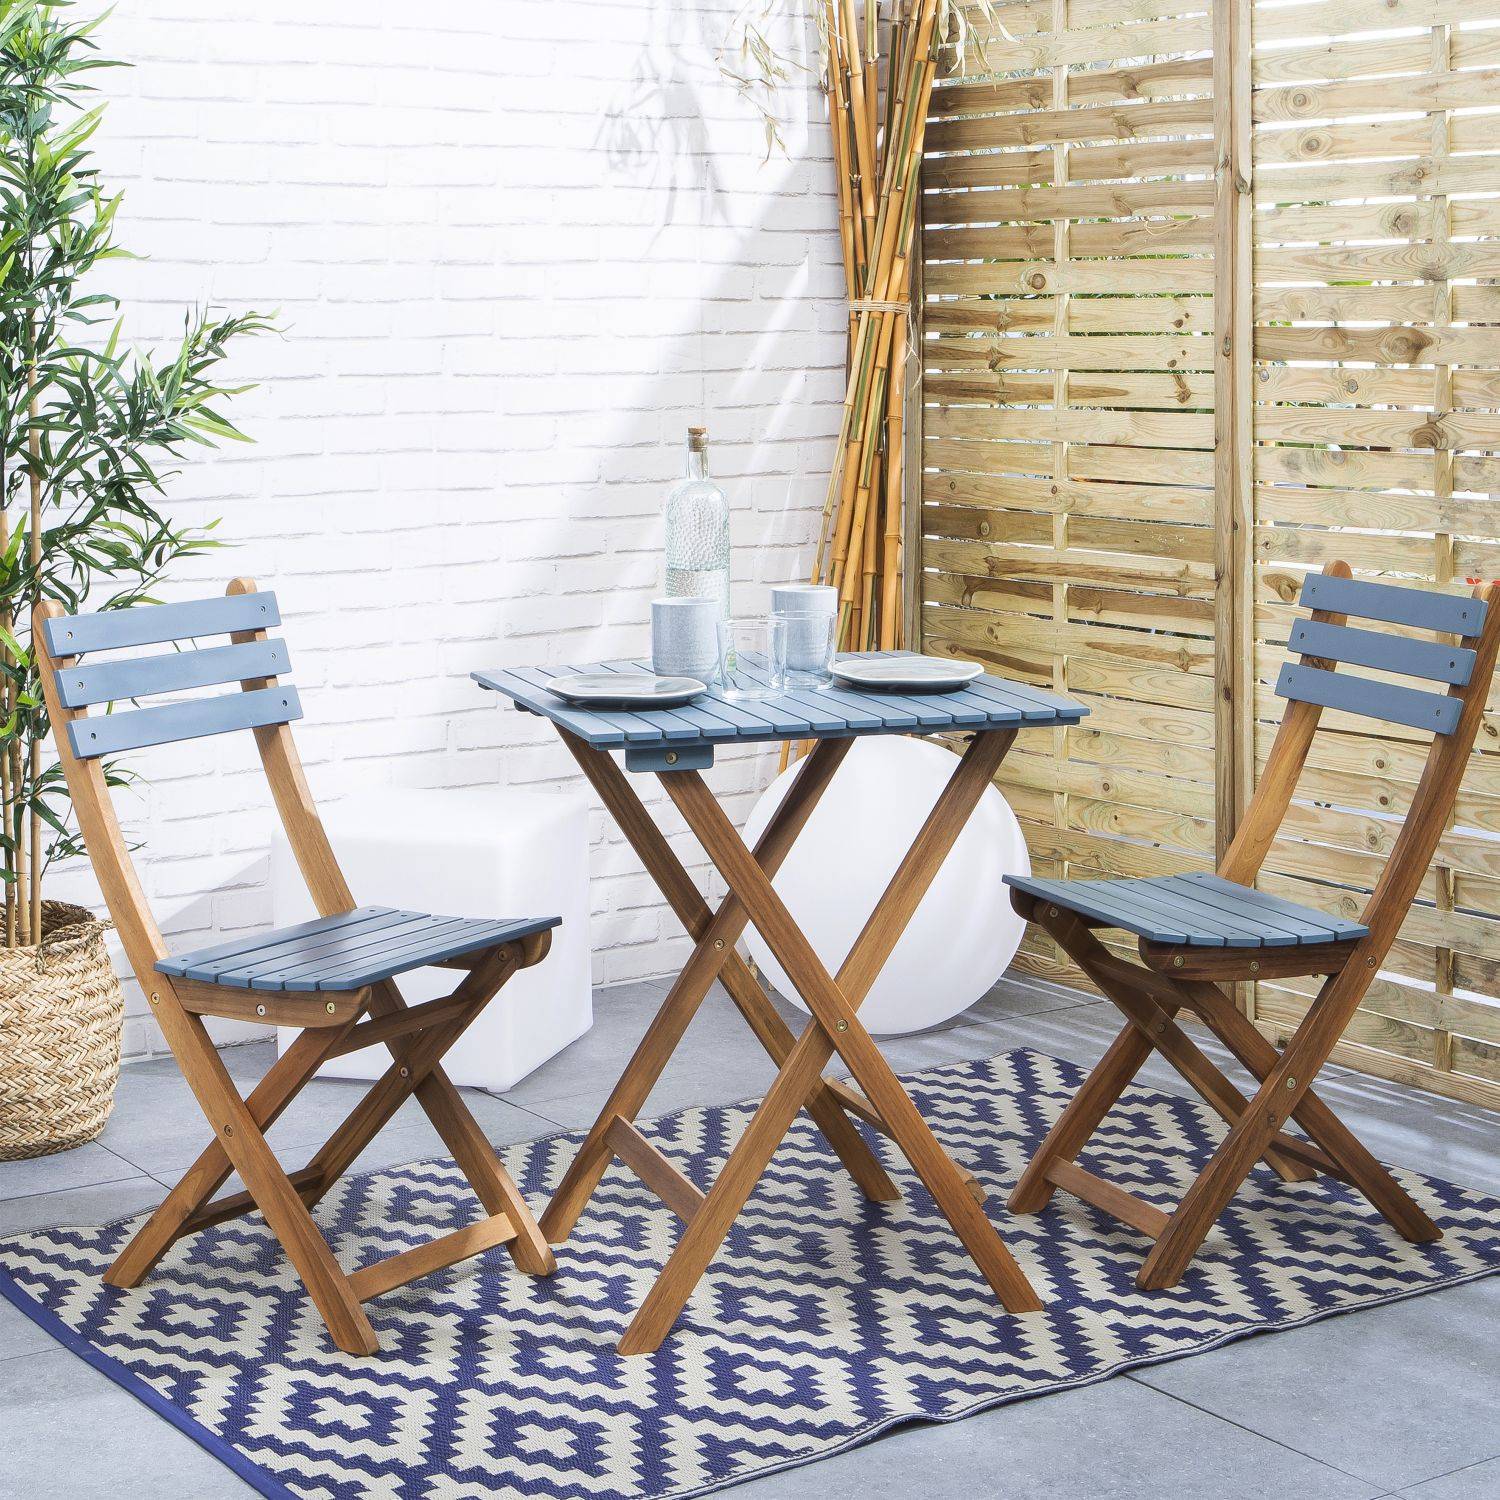 Conjunto de jardín de madera Bistro 60x60cm - Barcelona - azul grisáceo, mesa plegable cuadrada bicolor con 2 sillas plegables, acacia Photo1